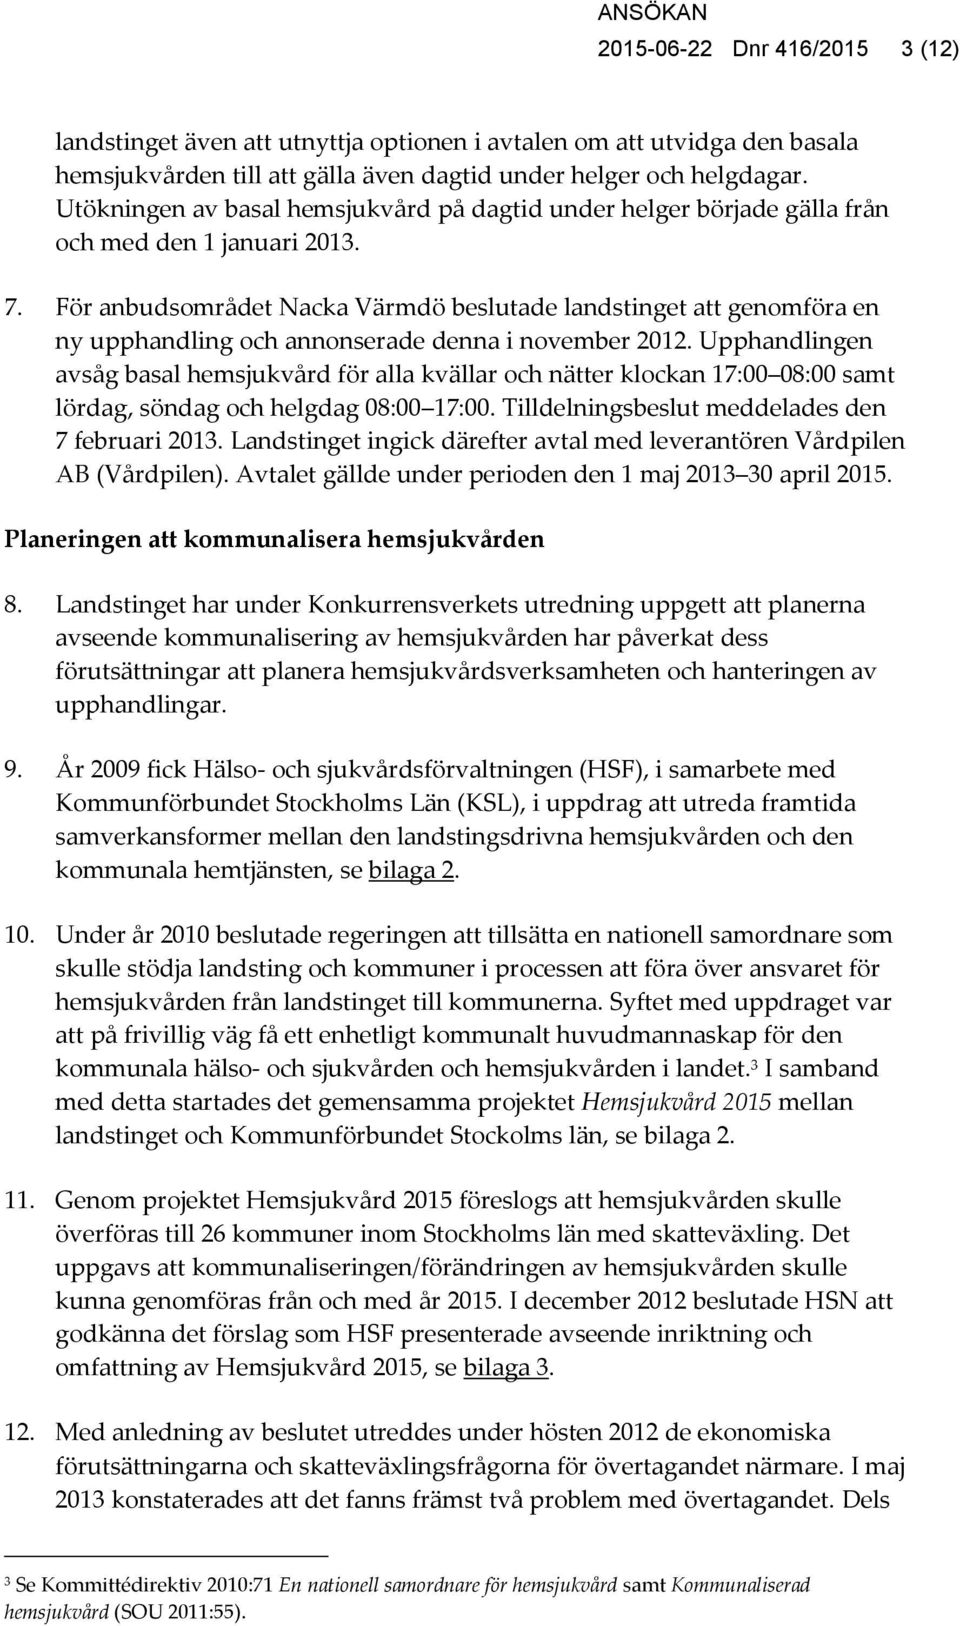 För anbudsområdet Nacka Värmdö beslutade landstinget att genomföra en ny upphandling och annonserade denna i november 2012.